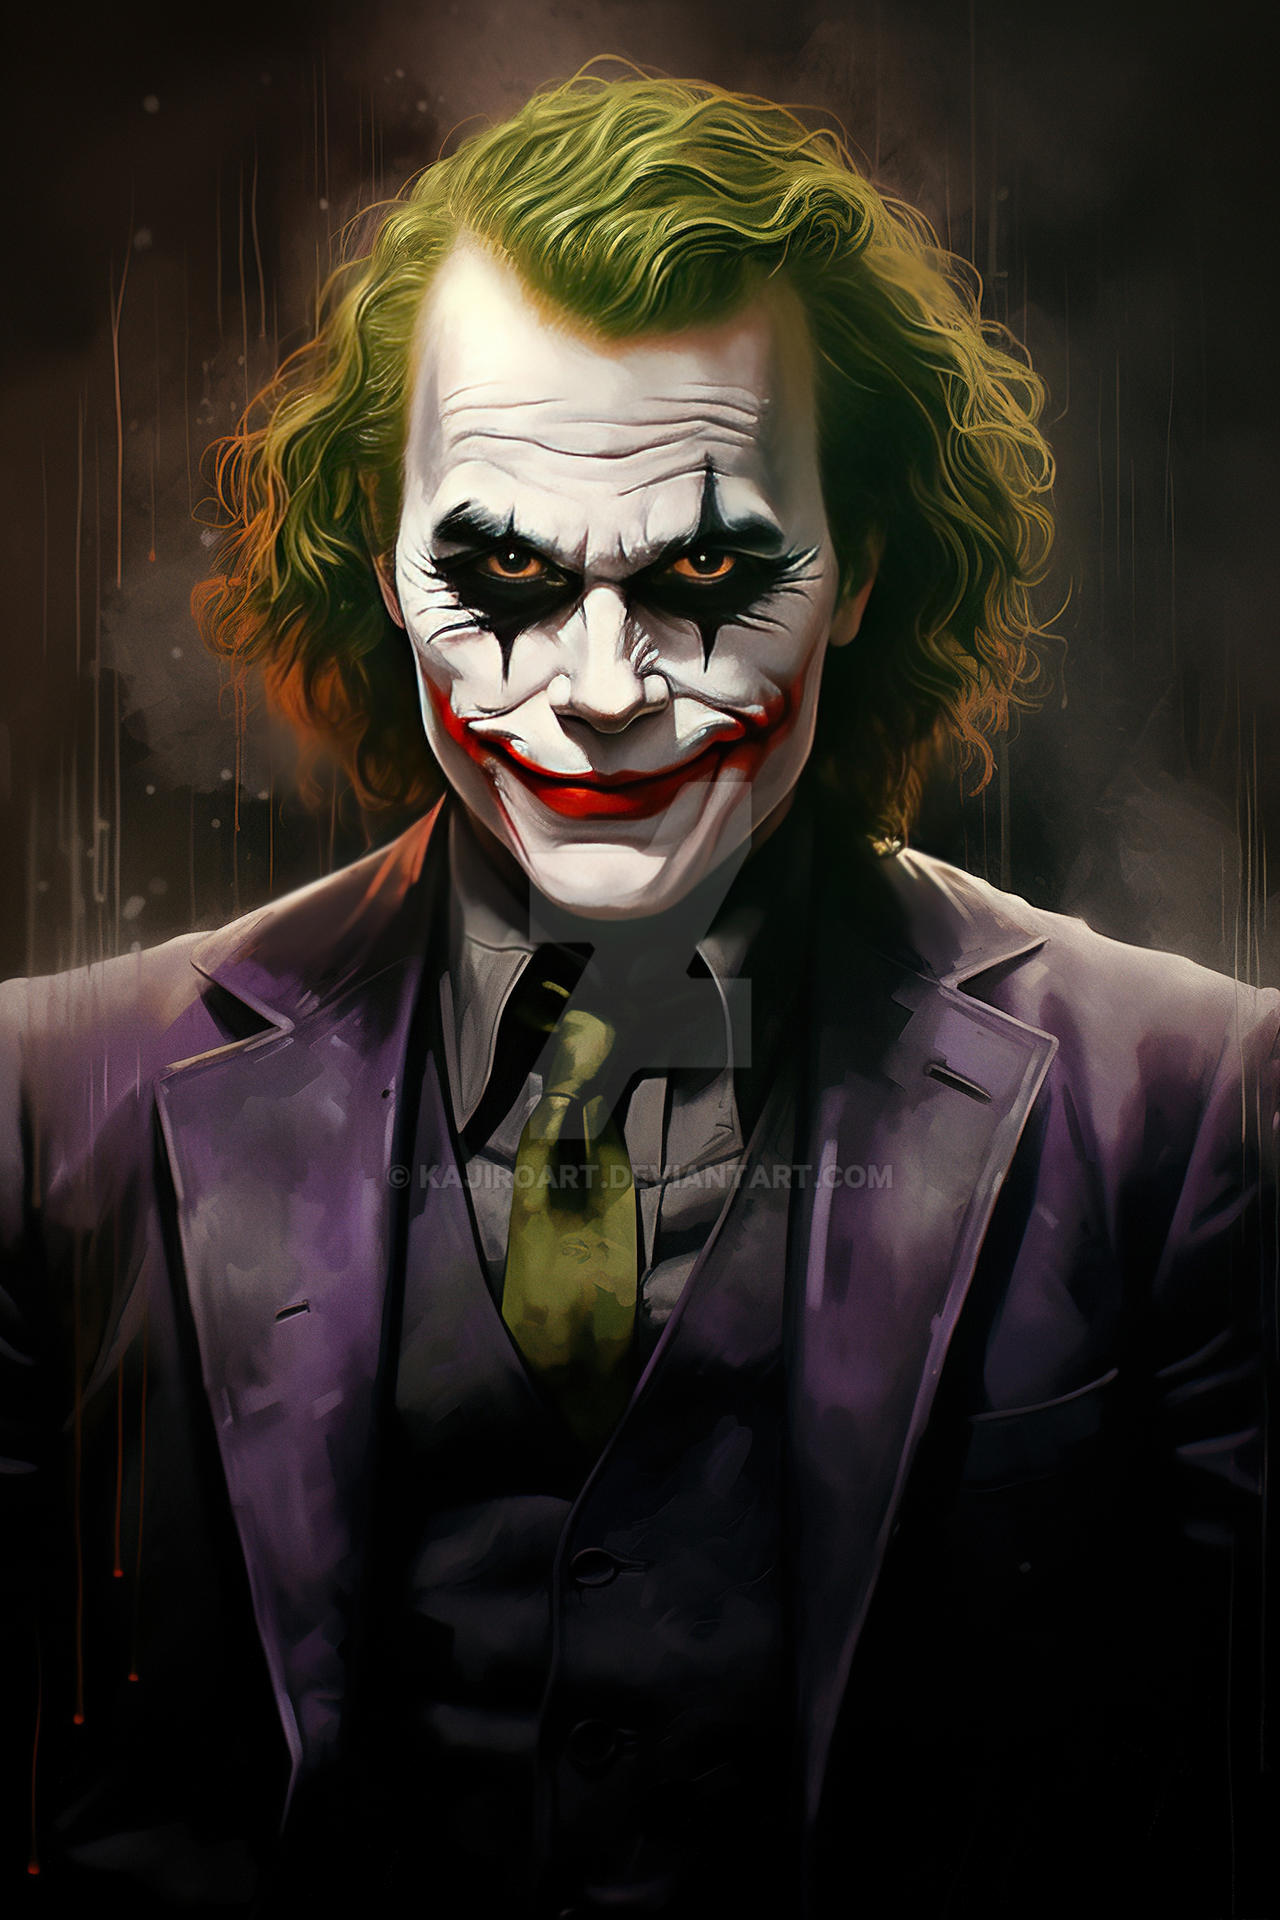 Joker Fan Art Poster by KajiroArt on DeviantArt